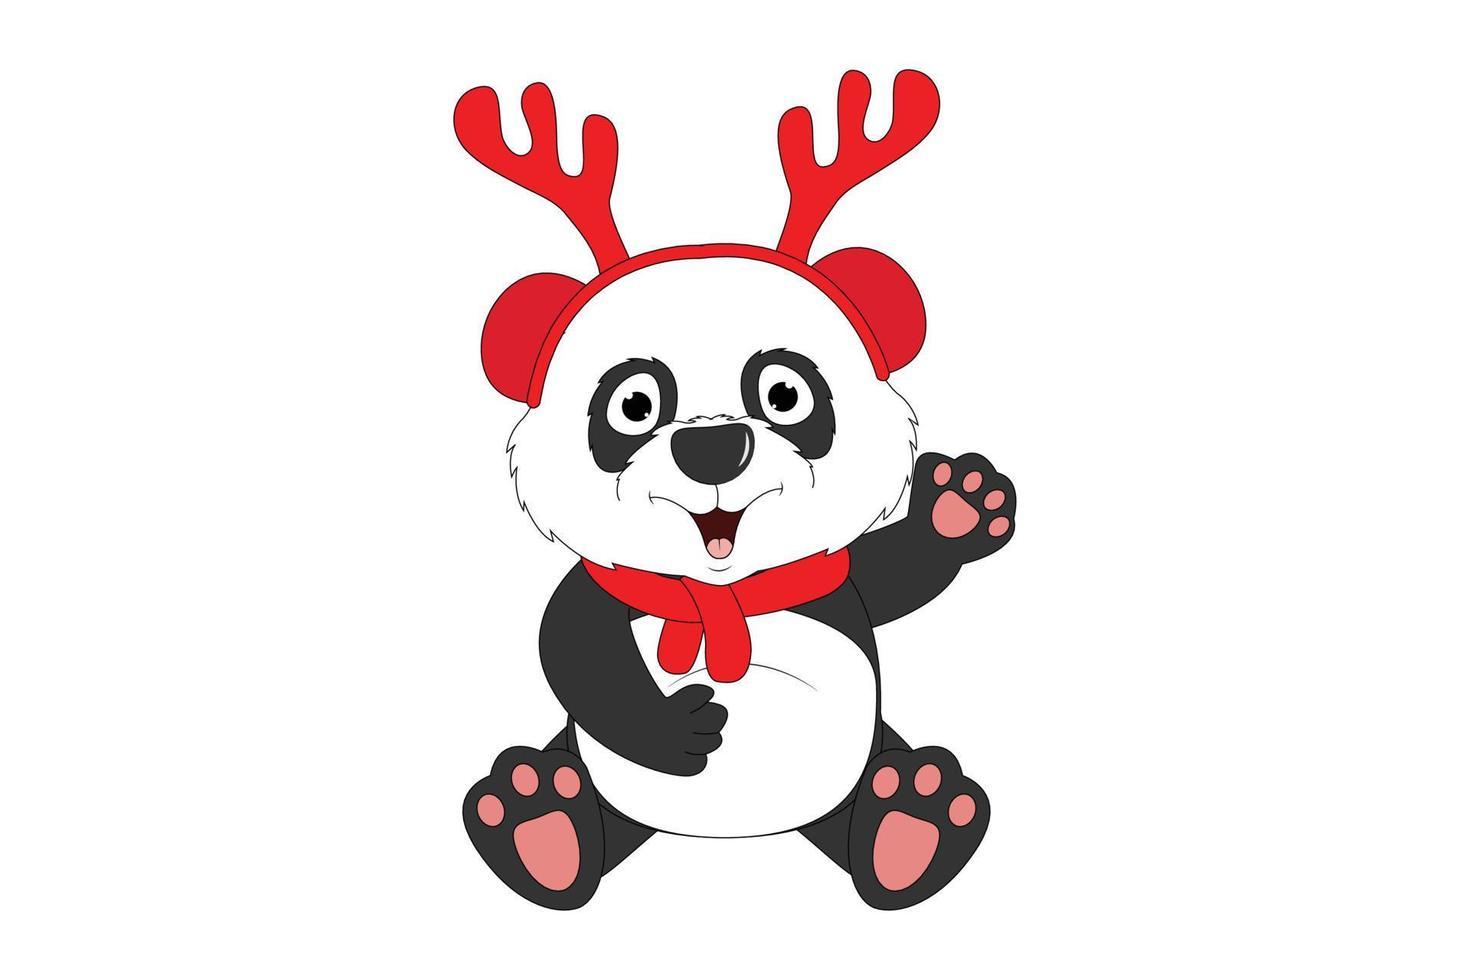 süßer Panda-Cartoon zu Weihnachten vektor